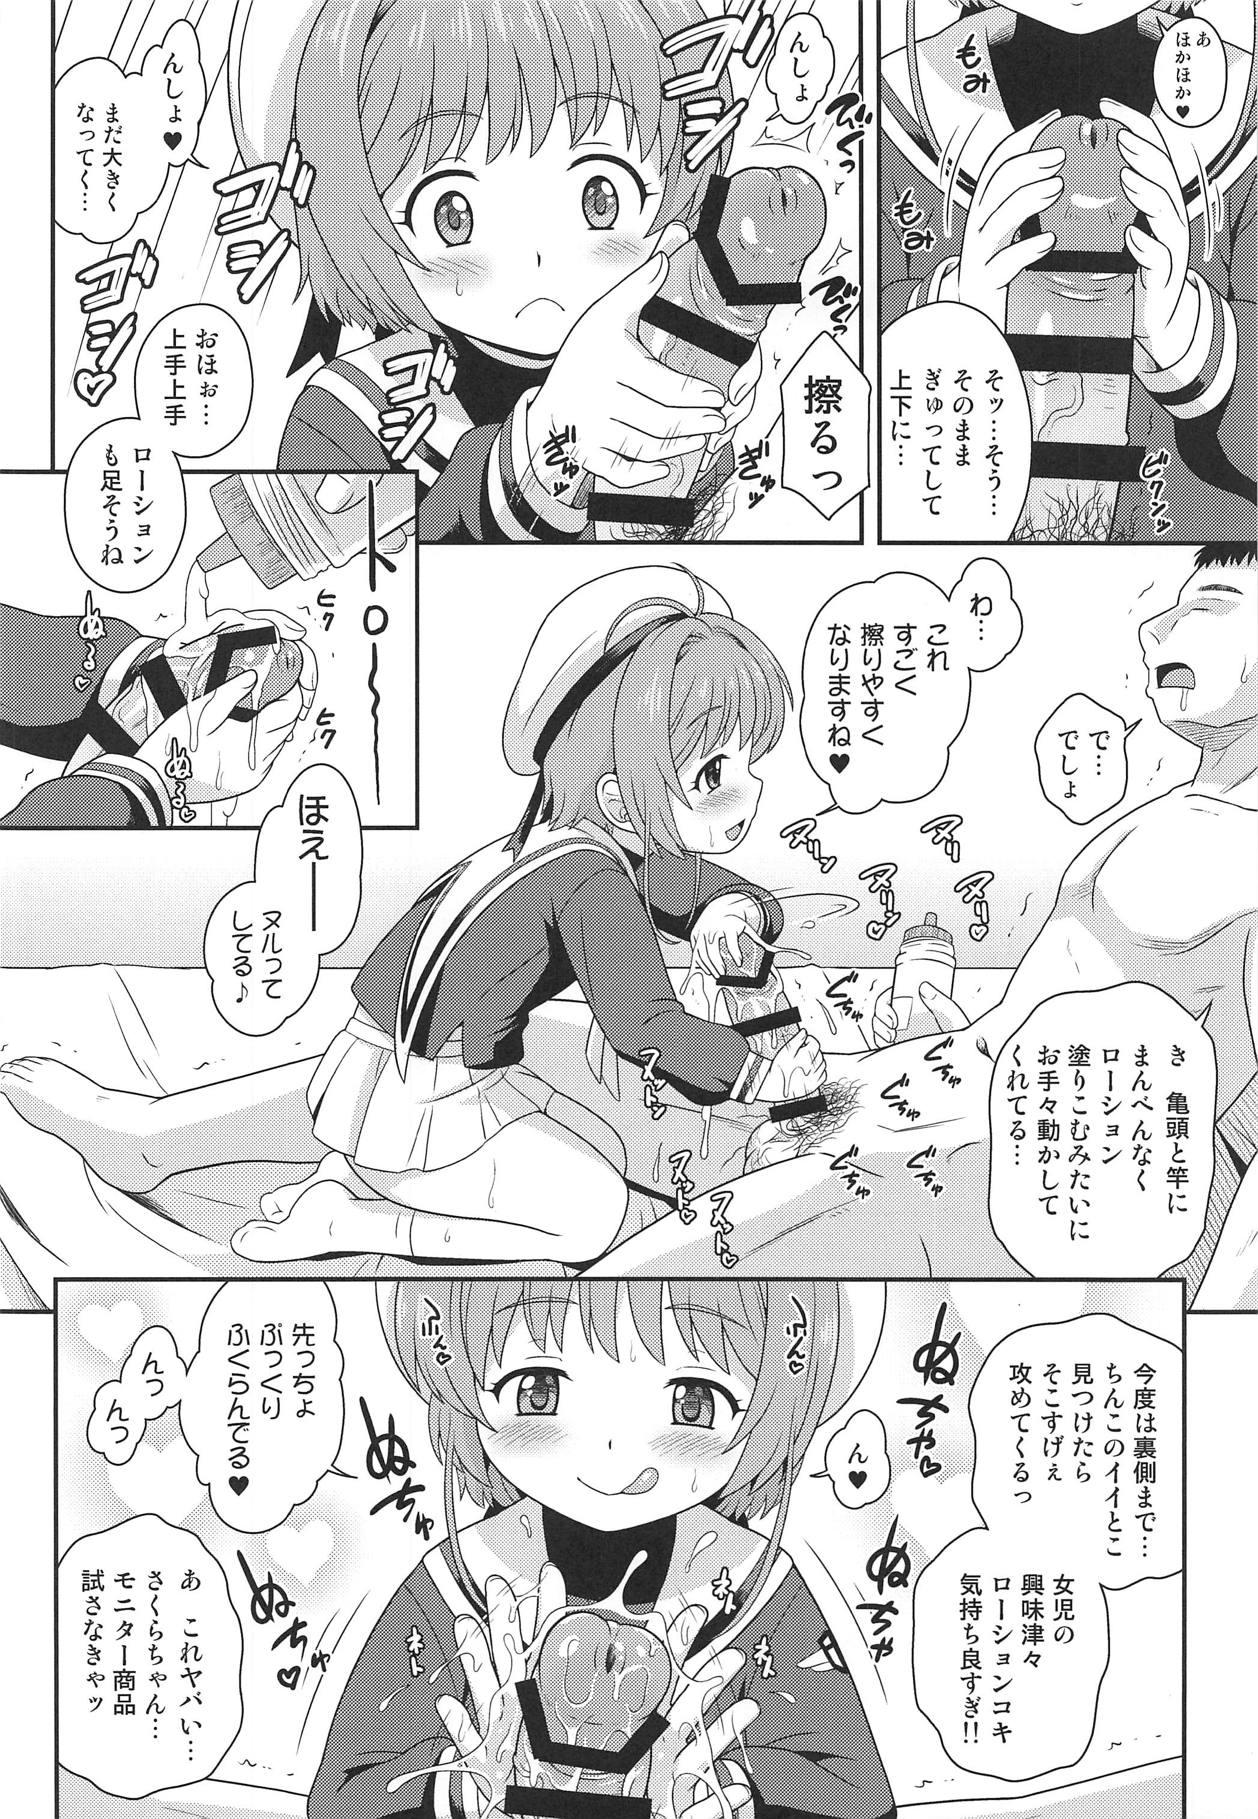 Shower (C95) [Taikan Kyohougumi (Azusa Norihee)] Sakura-chan to Oshigoto Challenge - Ona-Hole Challenge with Sakura (Cardcaptor Sakura) - Cardcaptor sakura Cums - Page 5